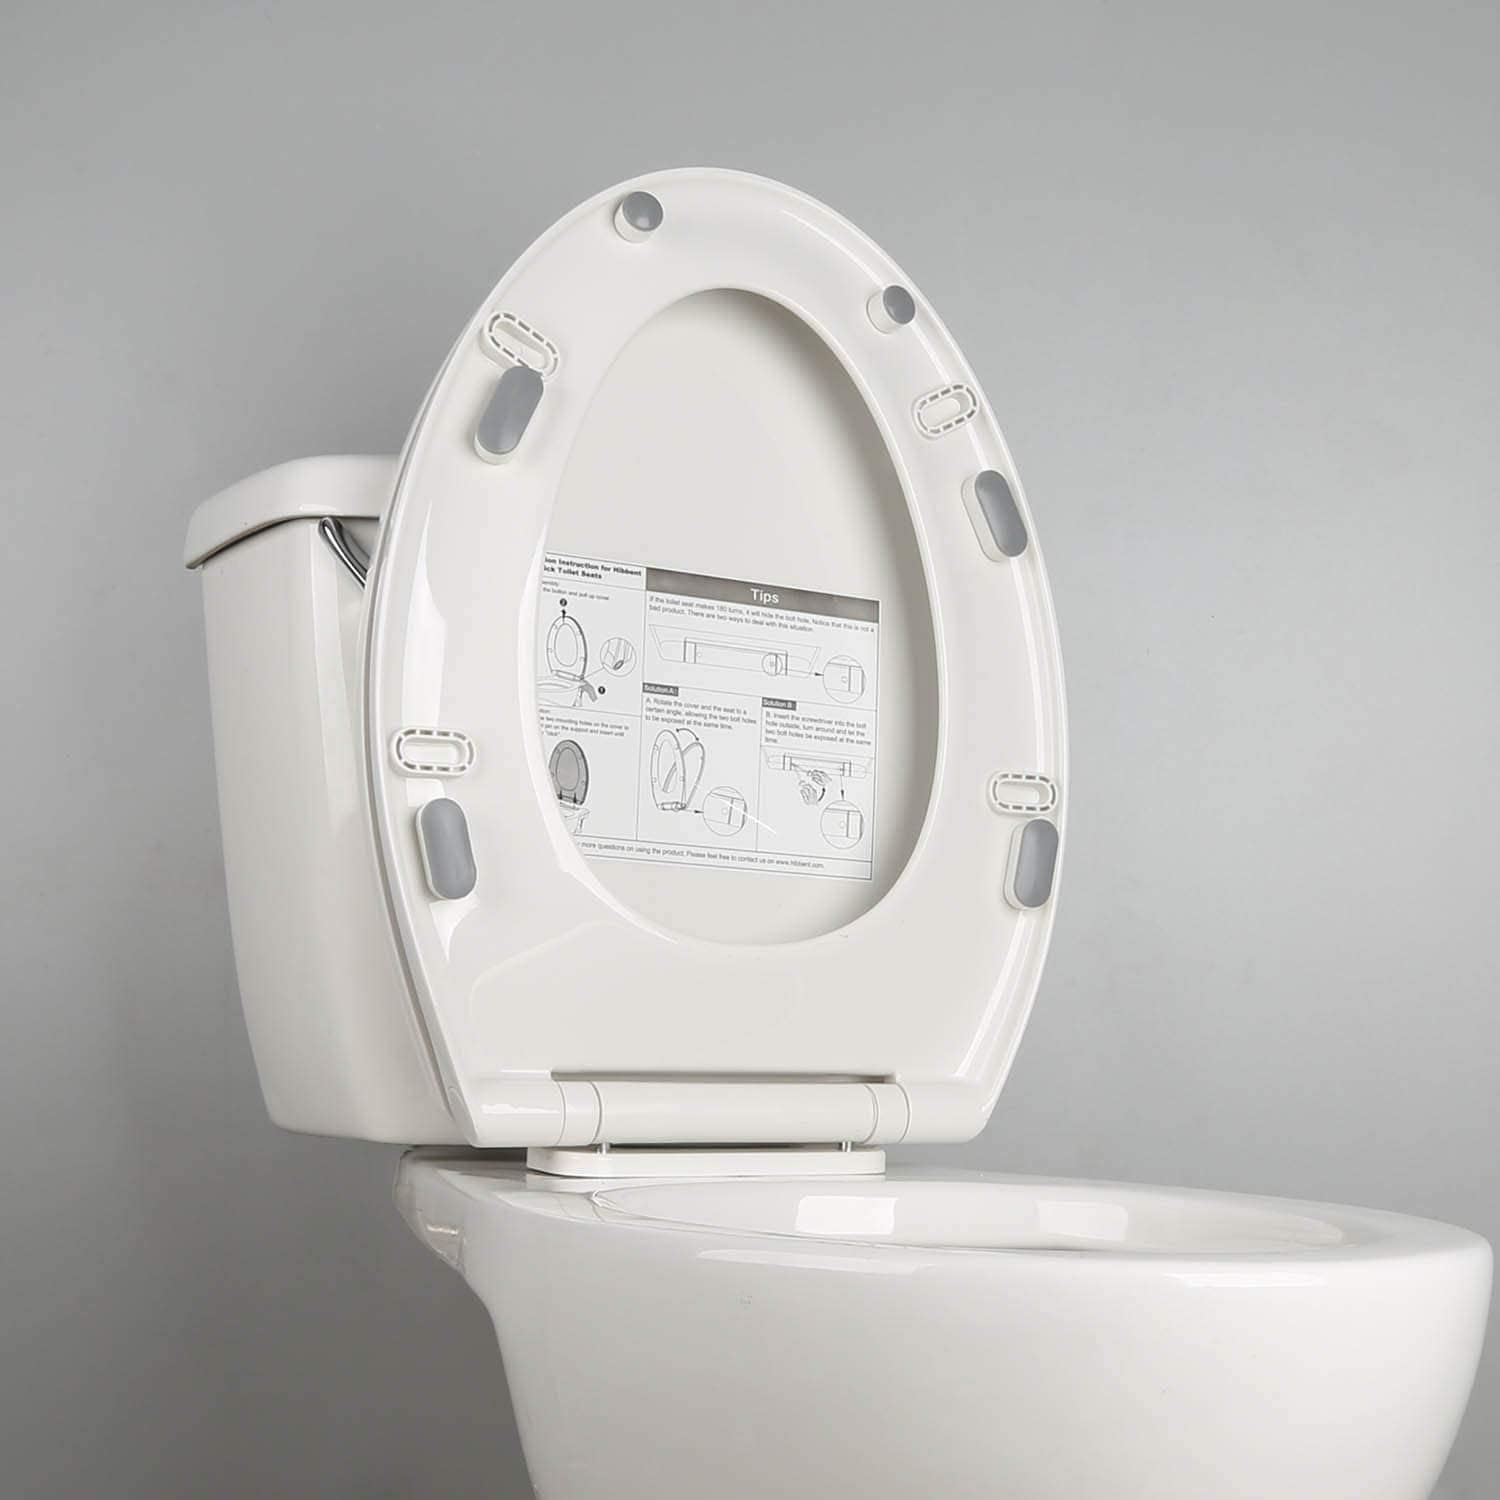 https://www.hibbentshop.com/cdn/shop/products/hibbent--hibbent-toilet-seat-bumpers-x-10-pieces-universal-toilet-seat-buffer-toilet-lid-rubber-bumpers-28981333459011.jpg?v=1657103741&width=1946